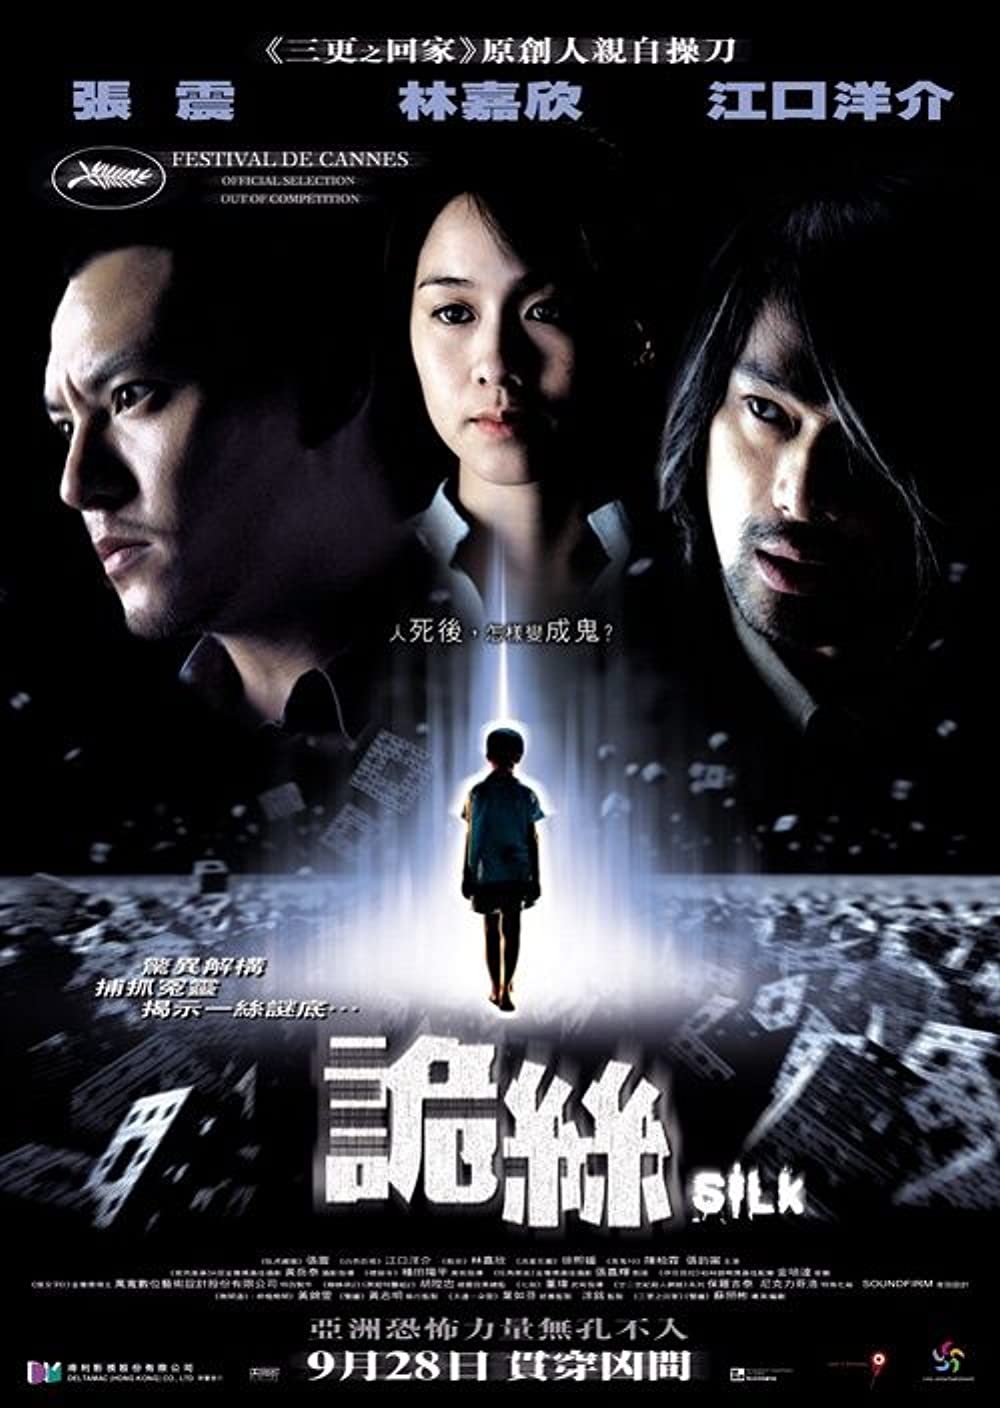 台灣恐怖電影推薦:《詭絲》2006